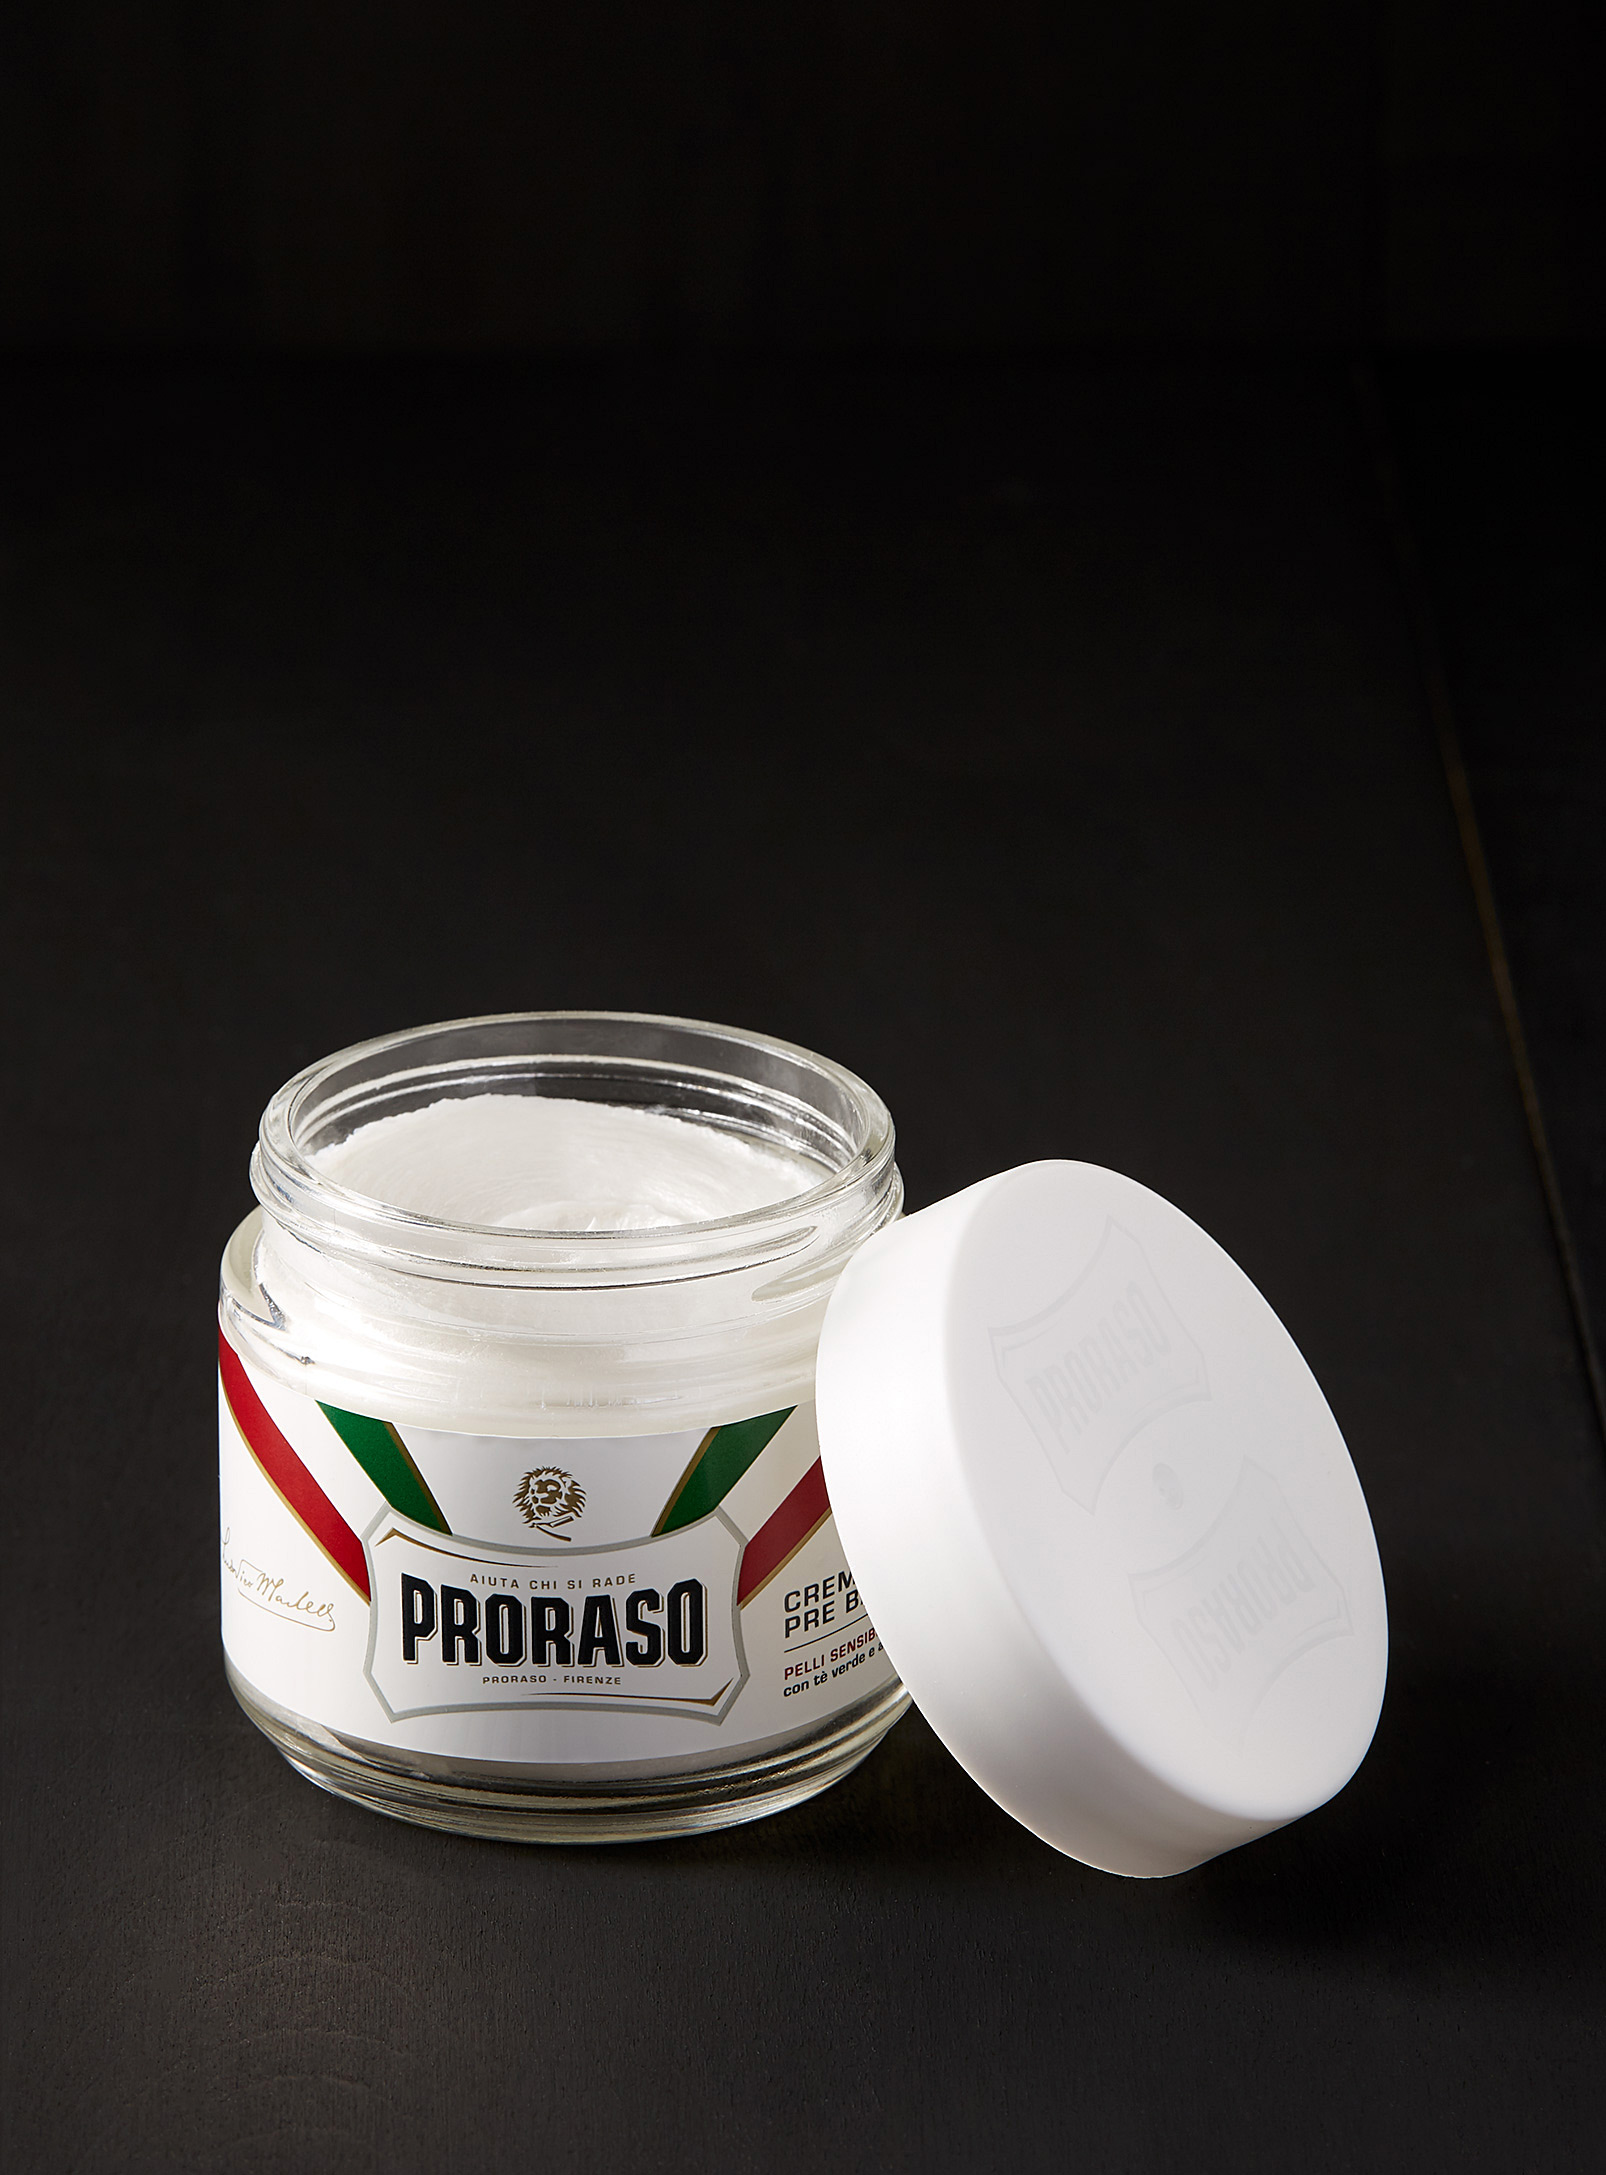 Proraso - La crème avant/après-rasage thé vert et avoine